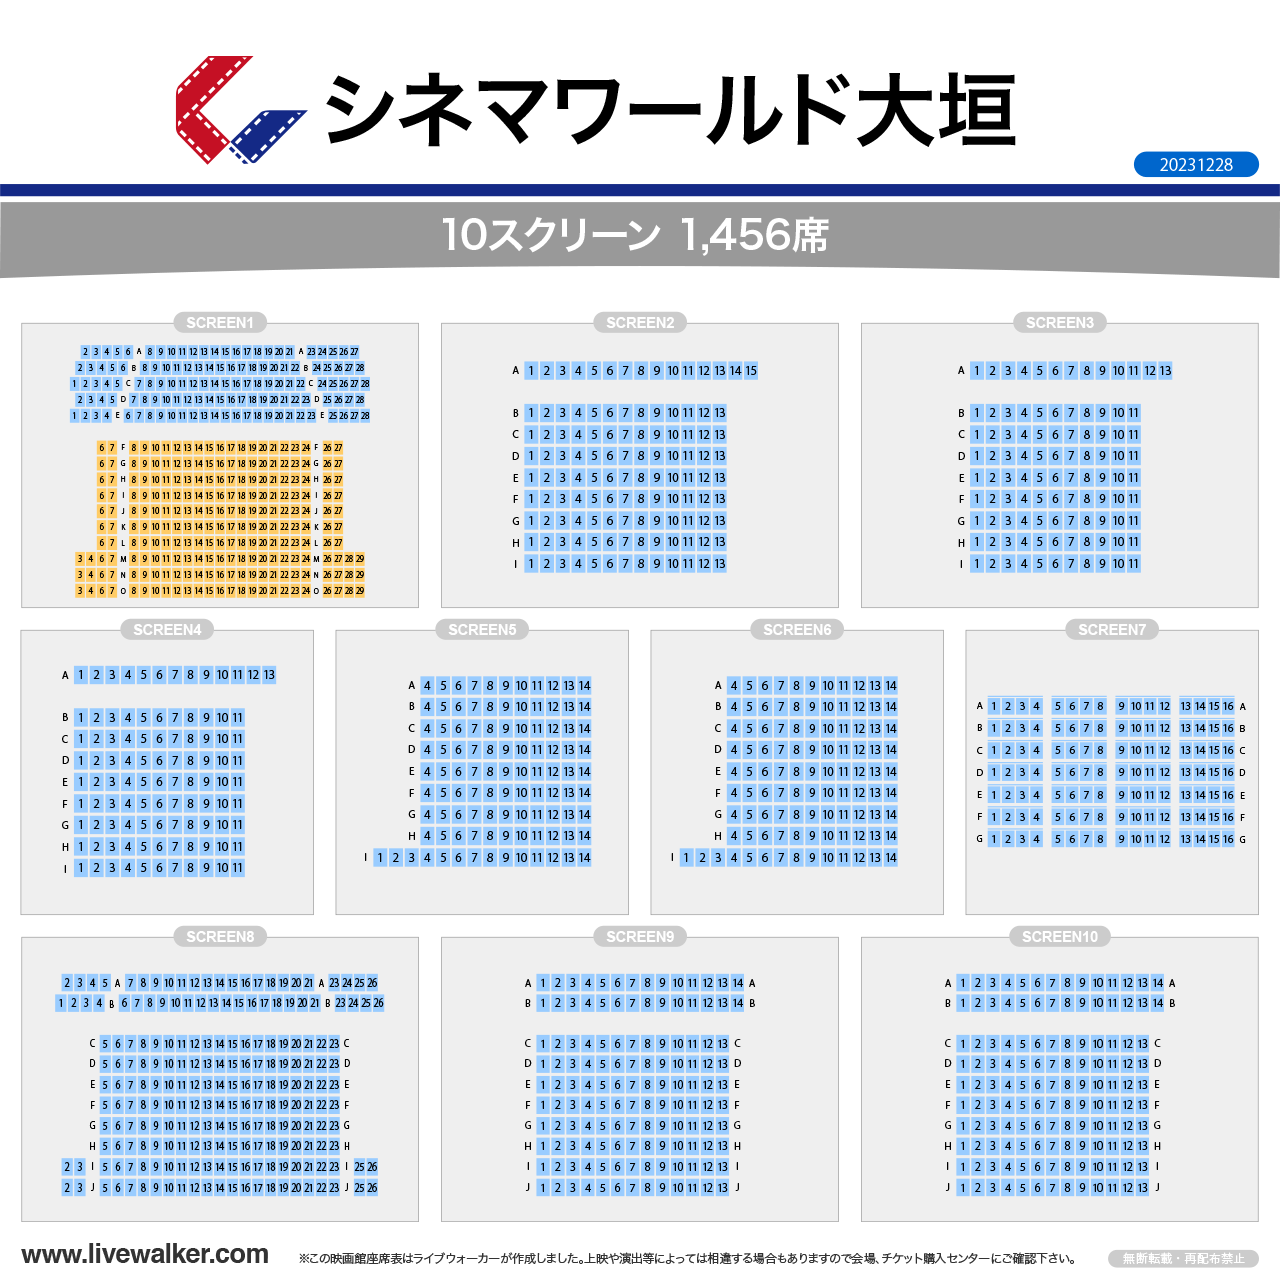 大垣コロナシネマワールドスクリーンの座席表